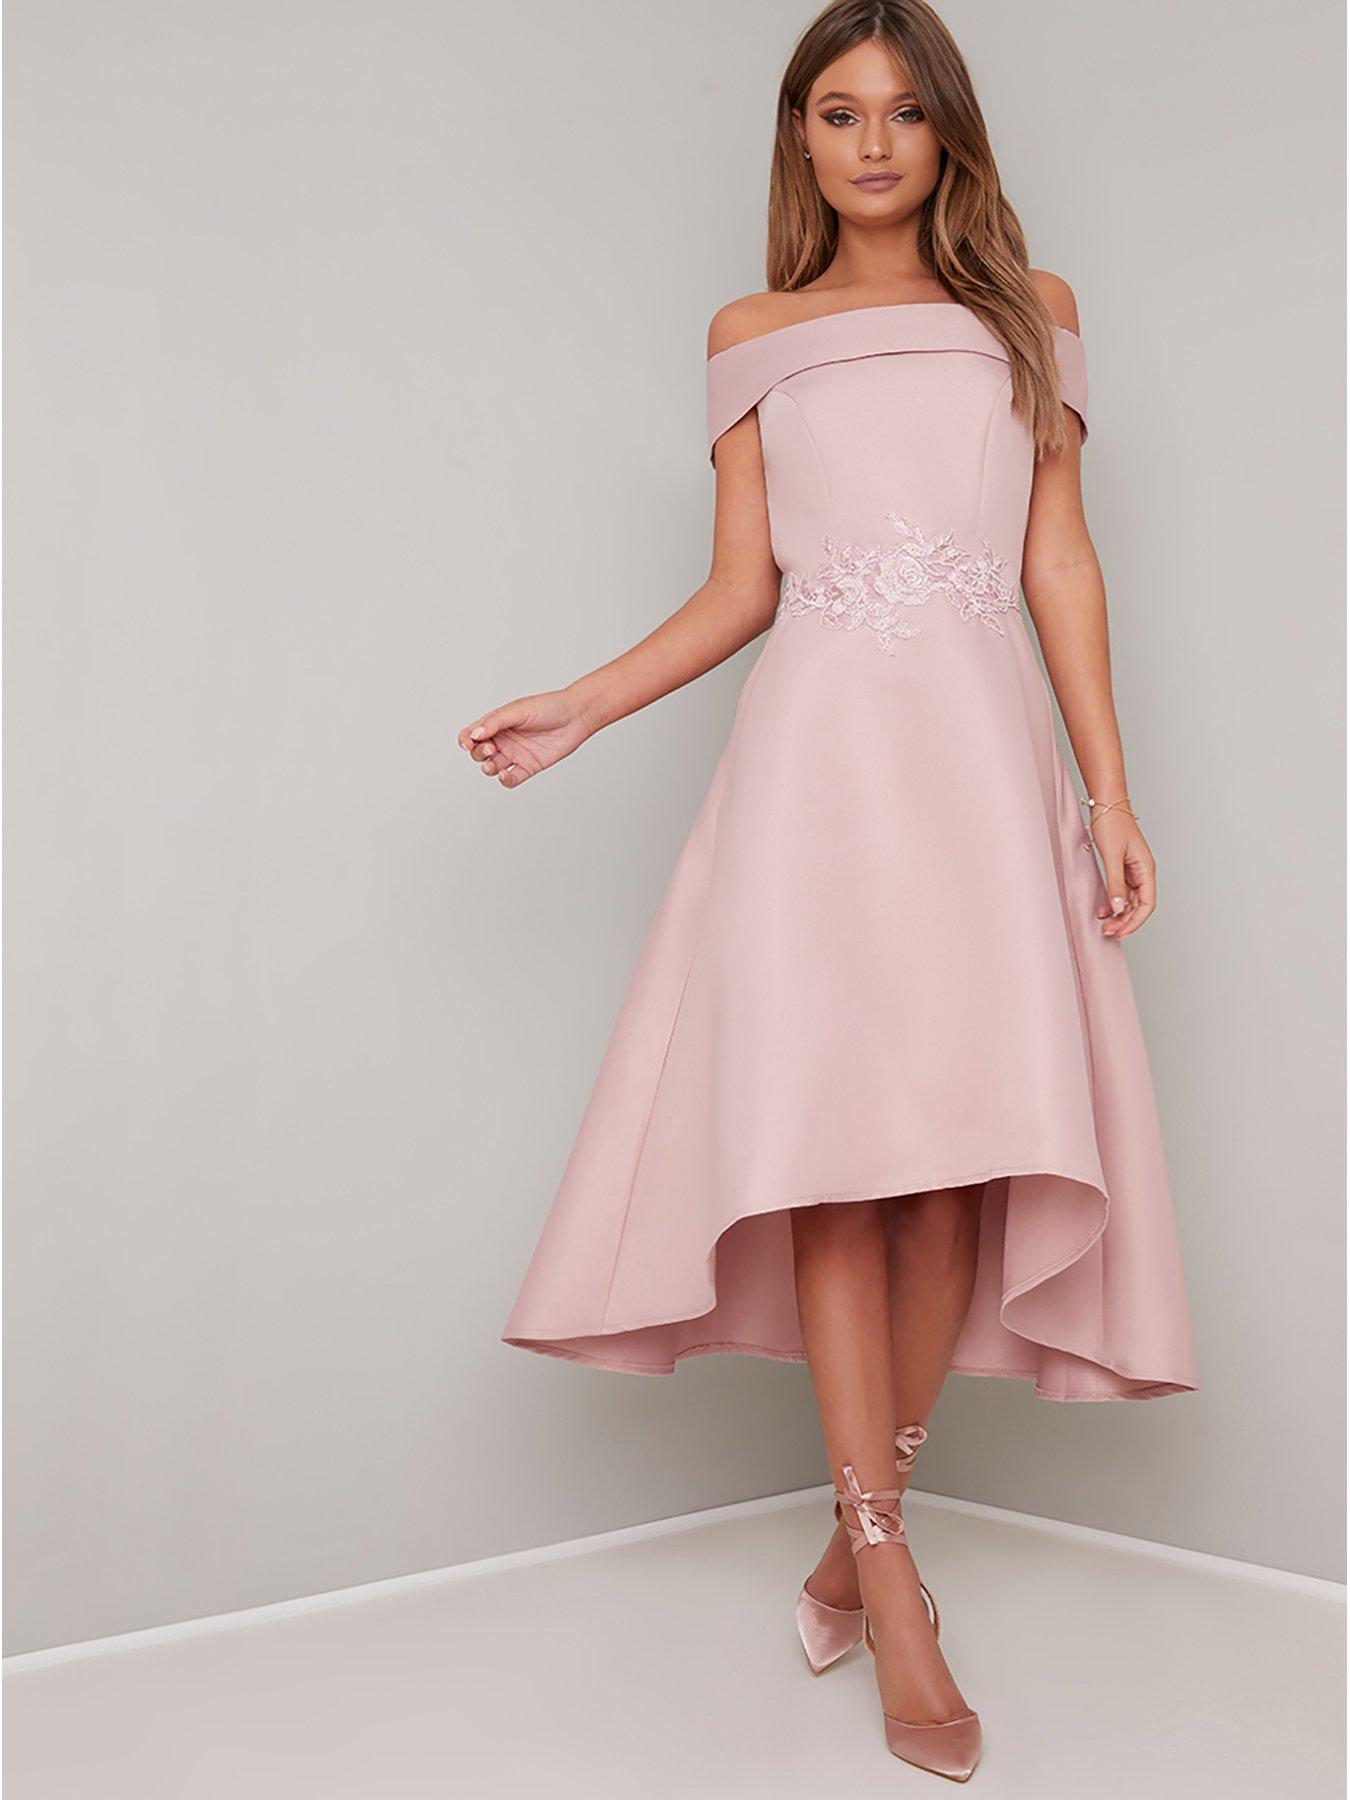 dusty pink bardot dress